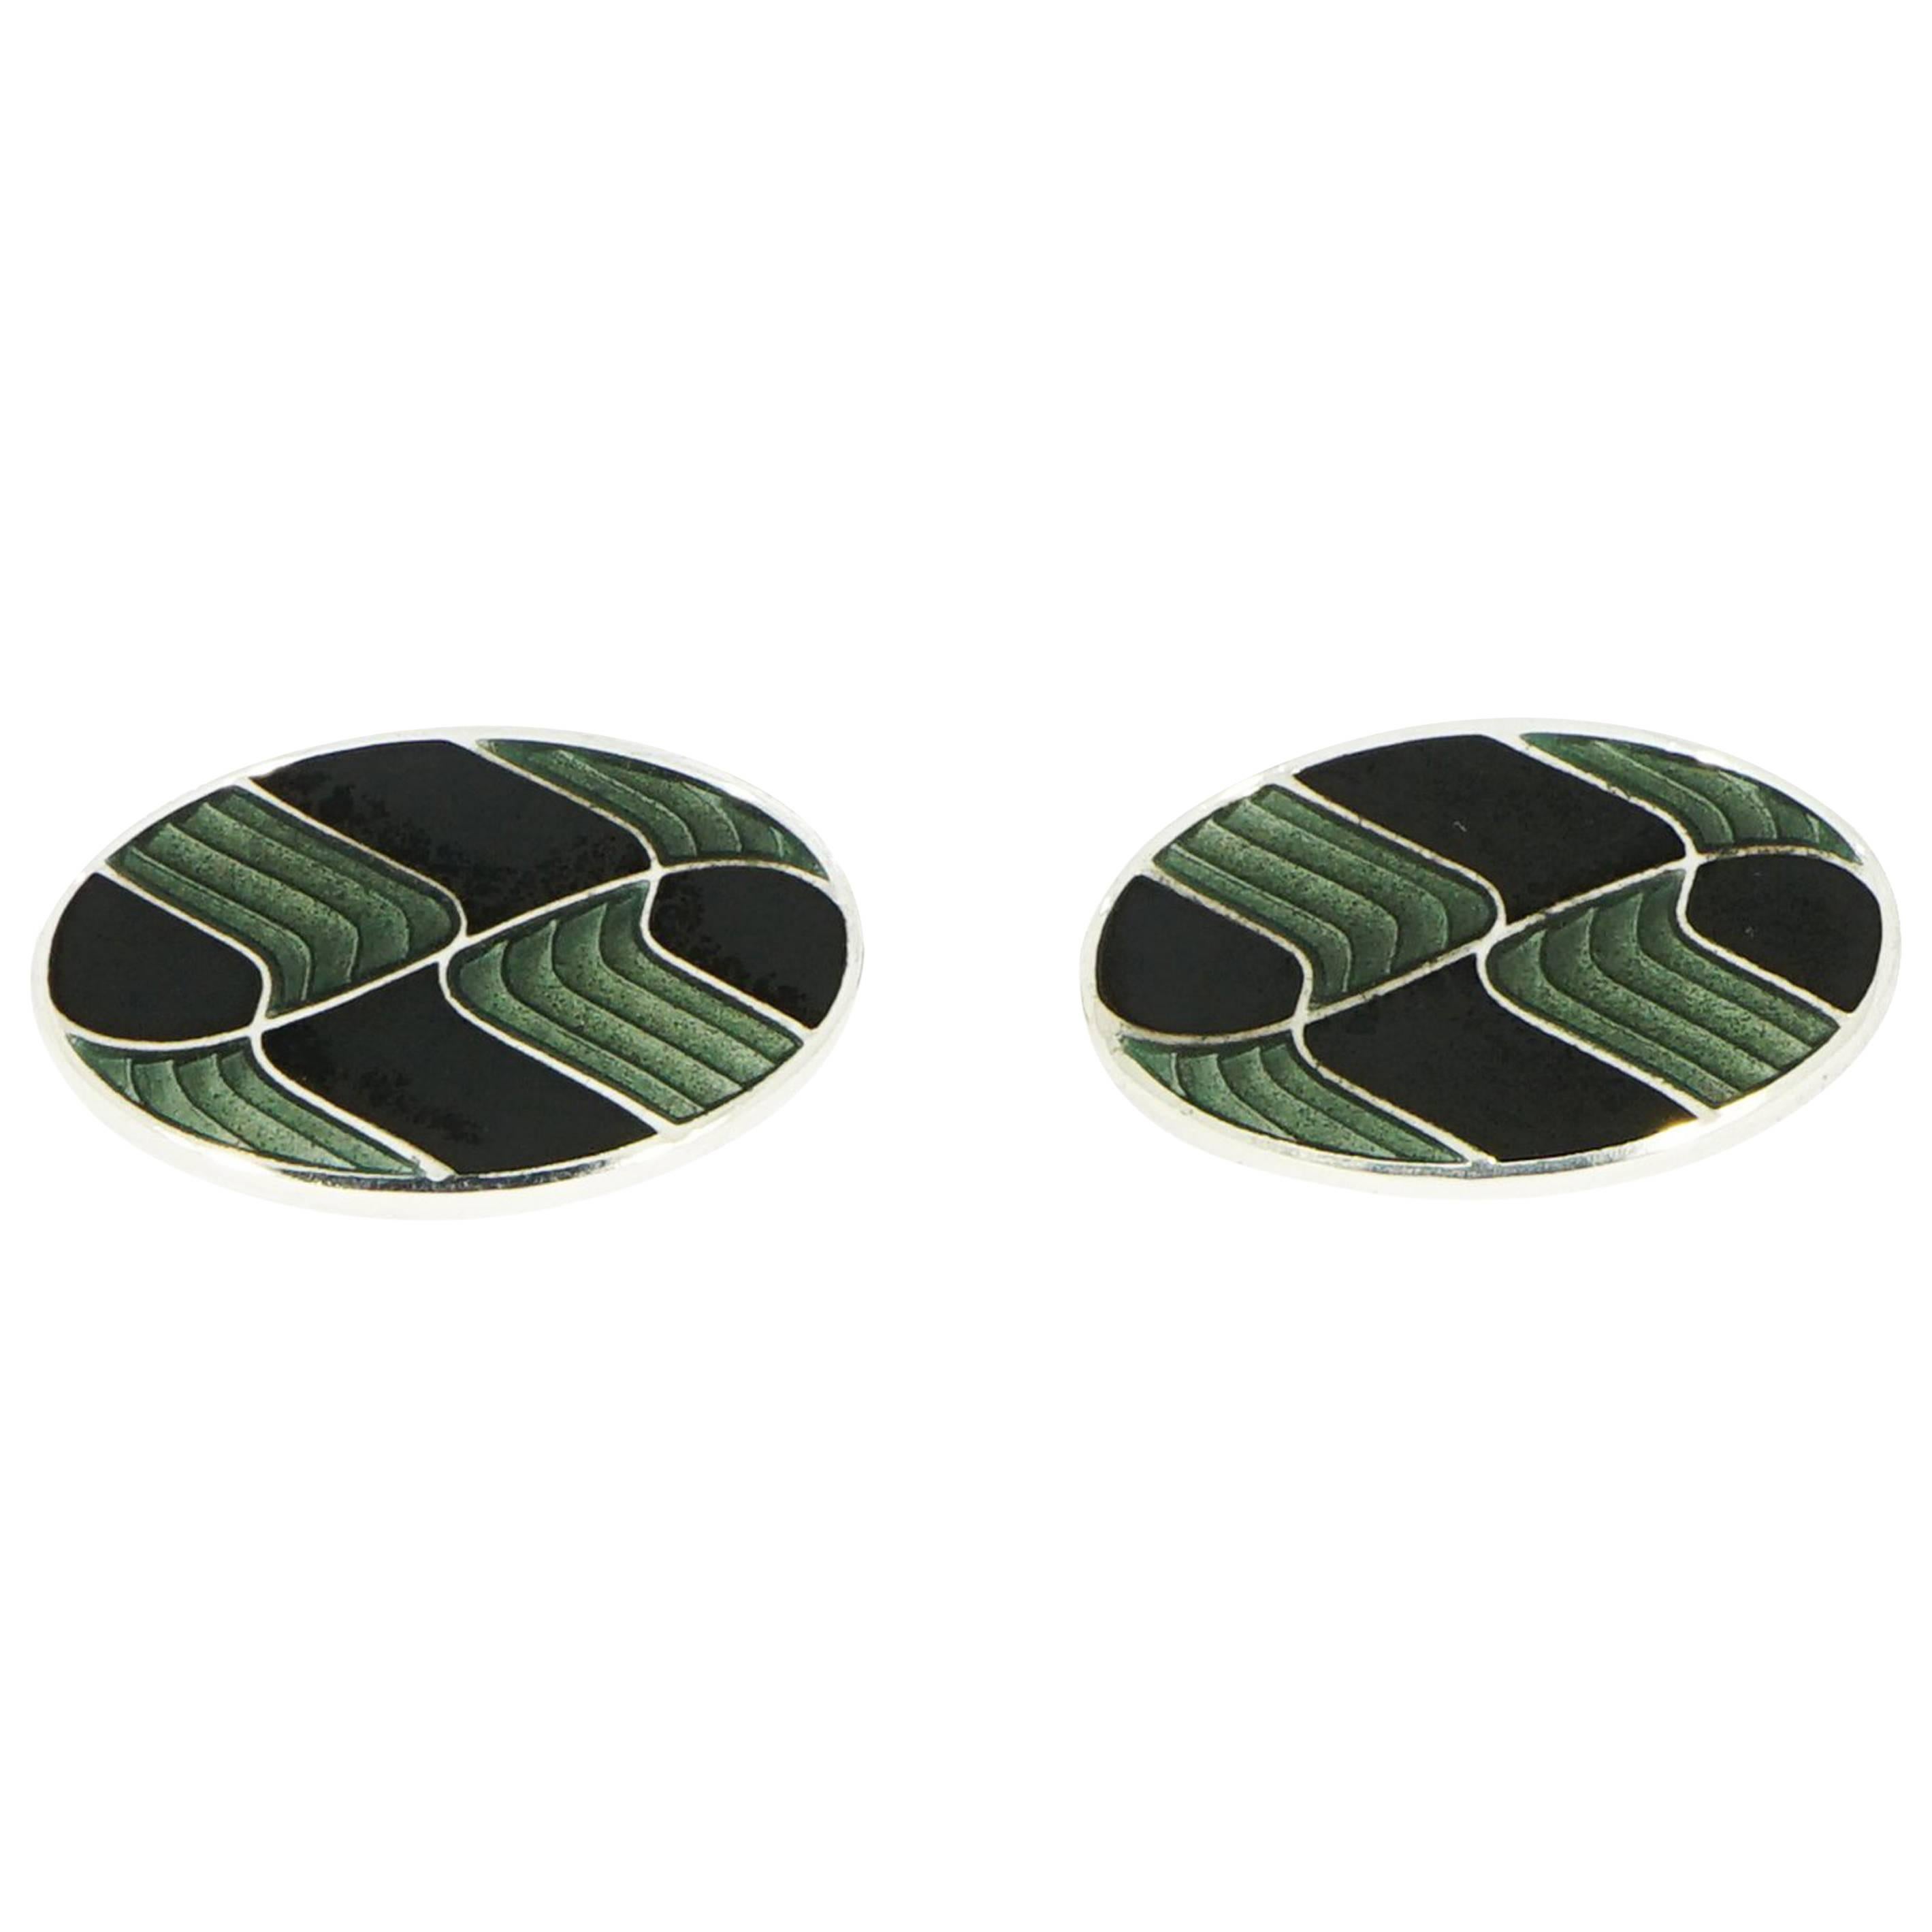 Ovale Manschettenknöpfe von Brixton & Gill, grün oder schwarz emailliert